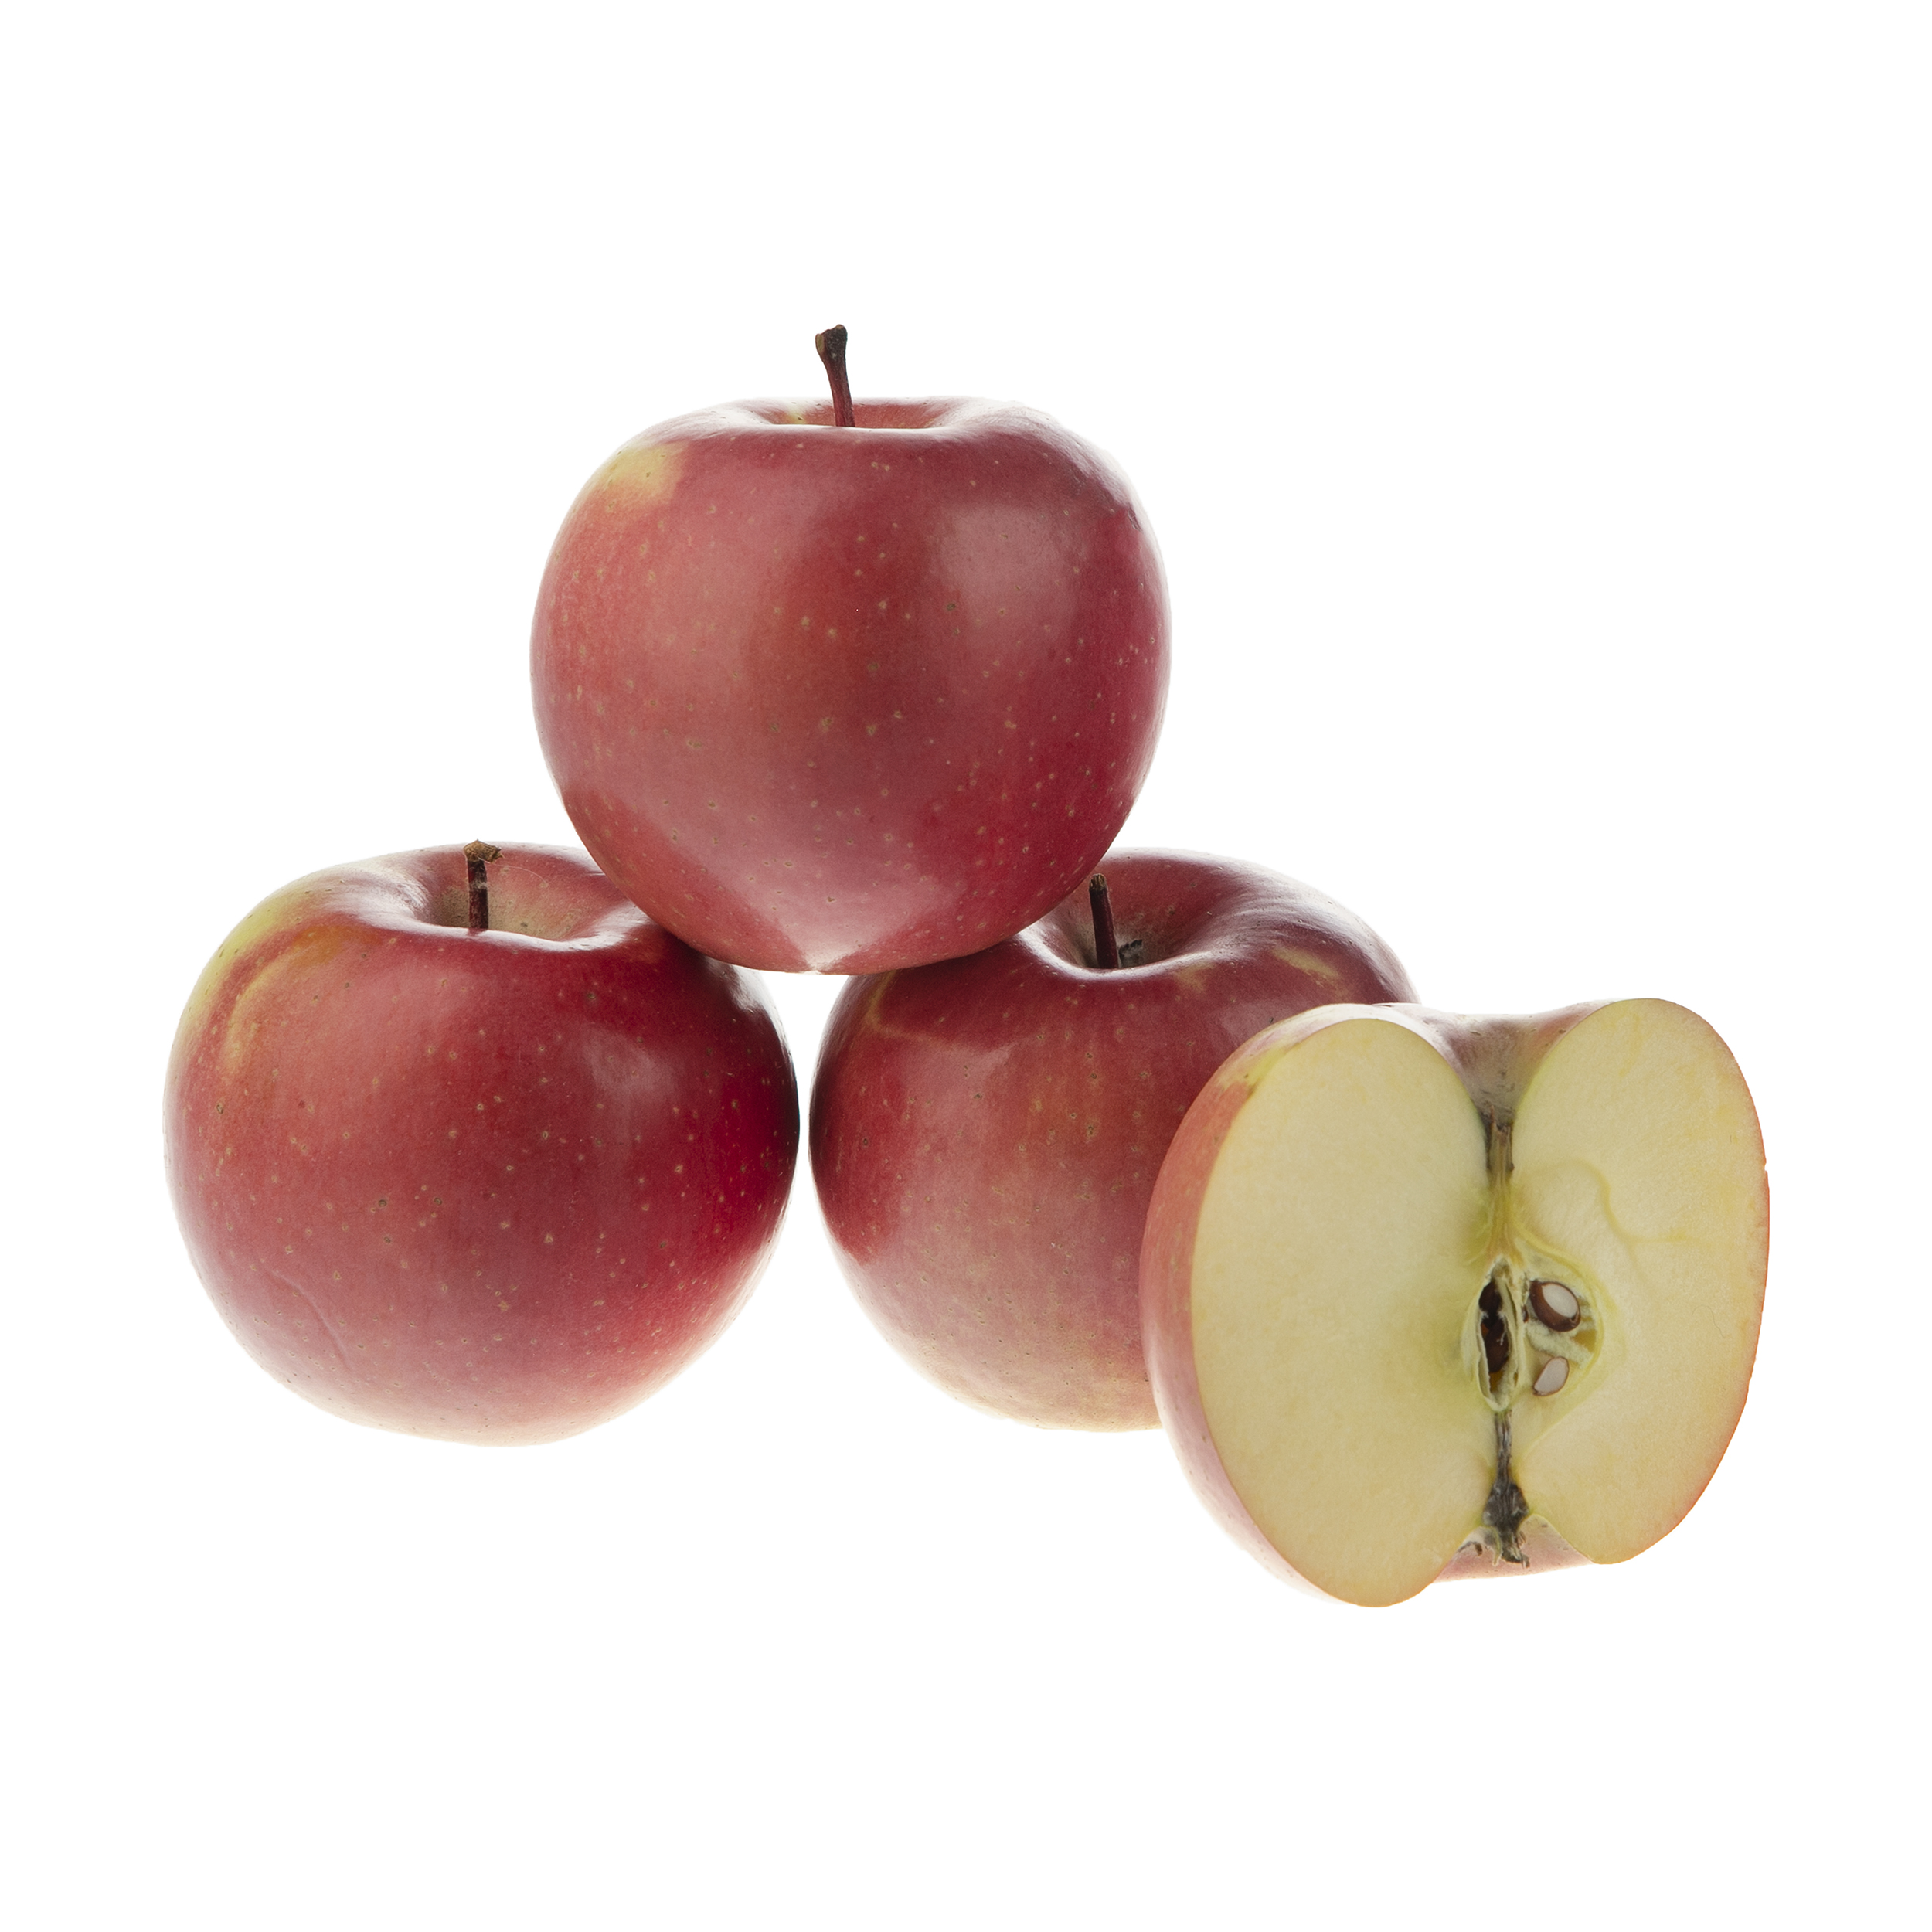 سیب قرمز فوجی بلوط - 1 کیلوگرم 